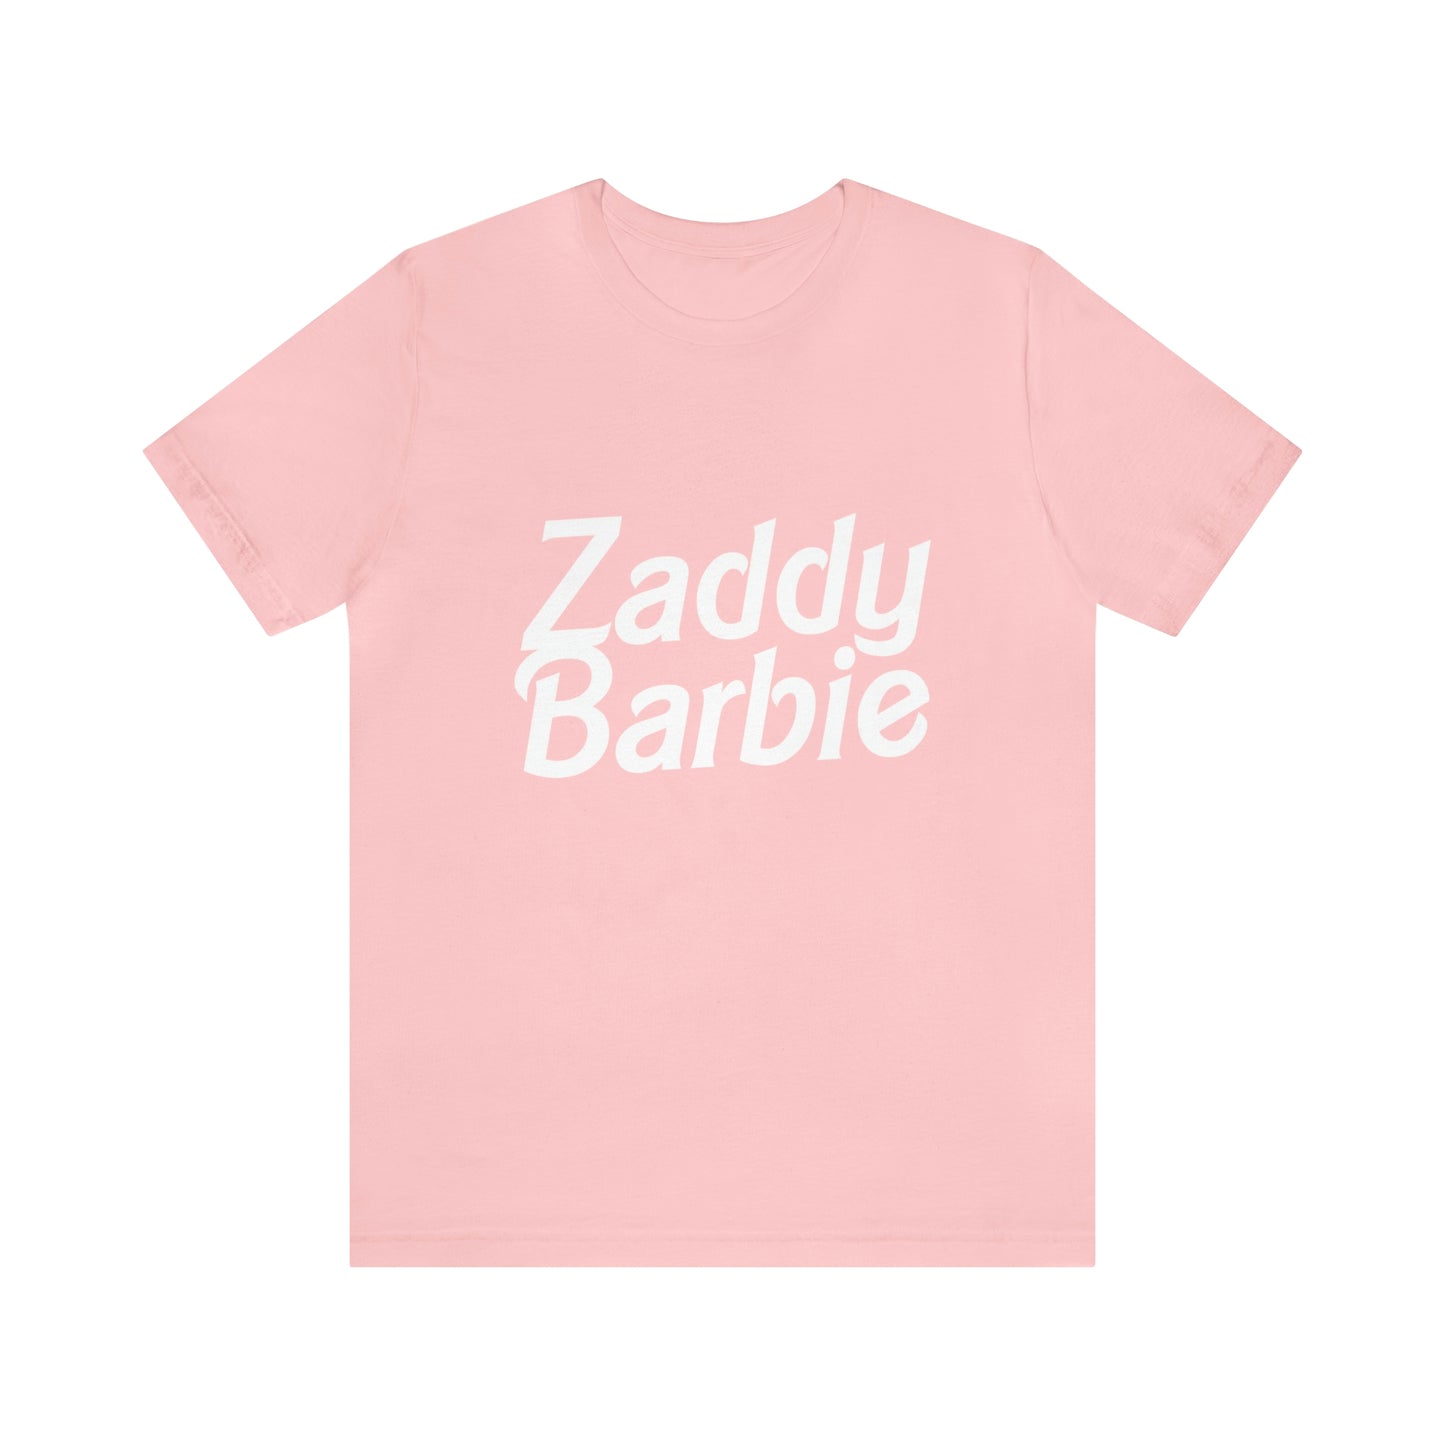 Zaddy Barbie